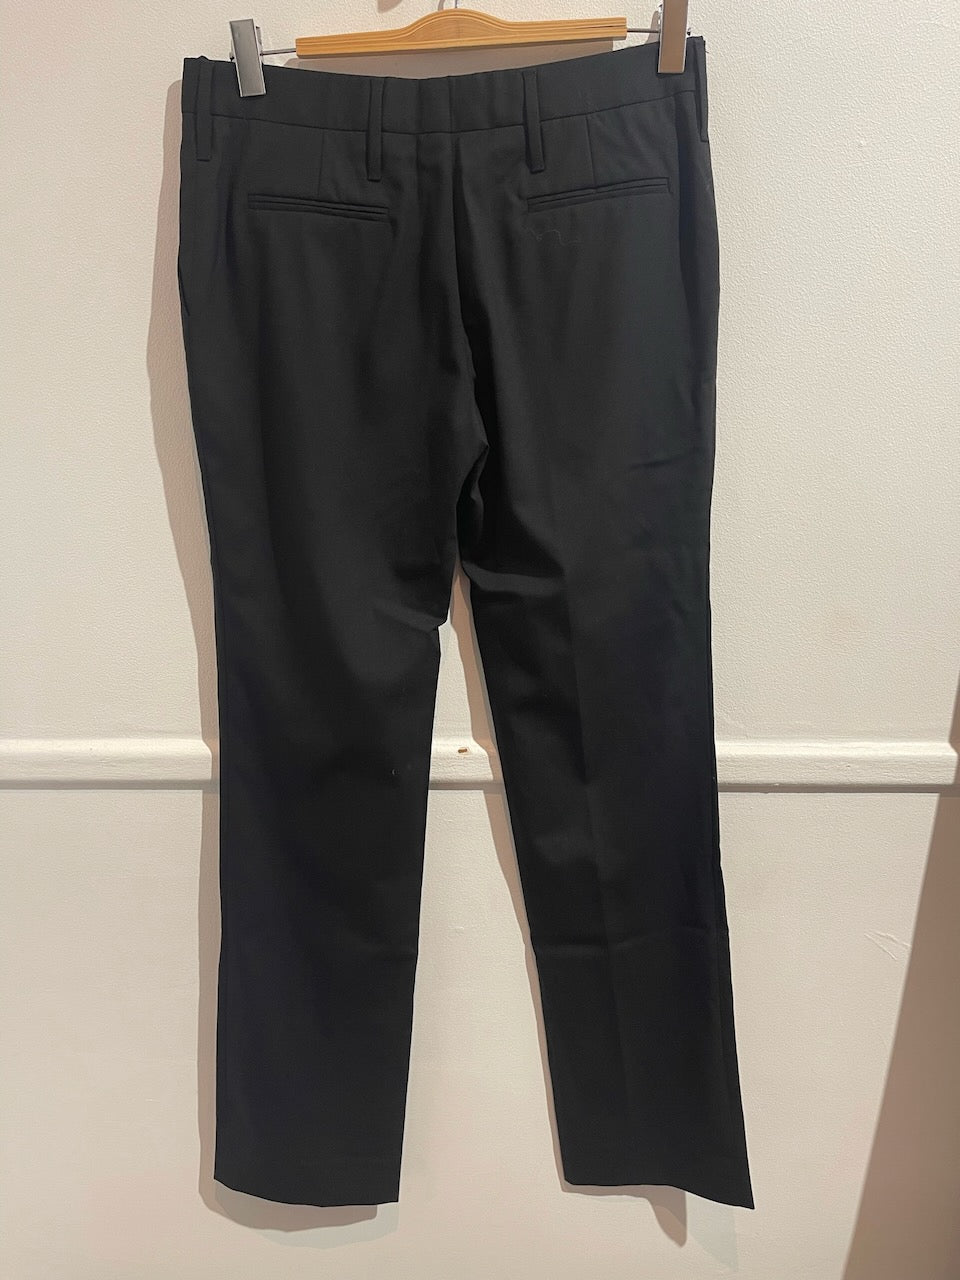 Pantalon Prada noir T.40